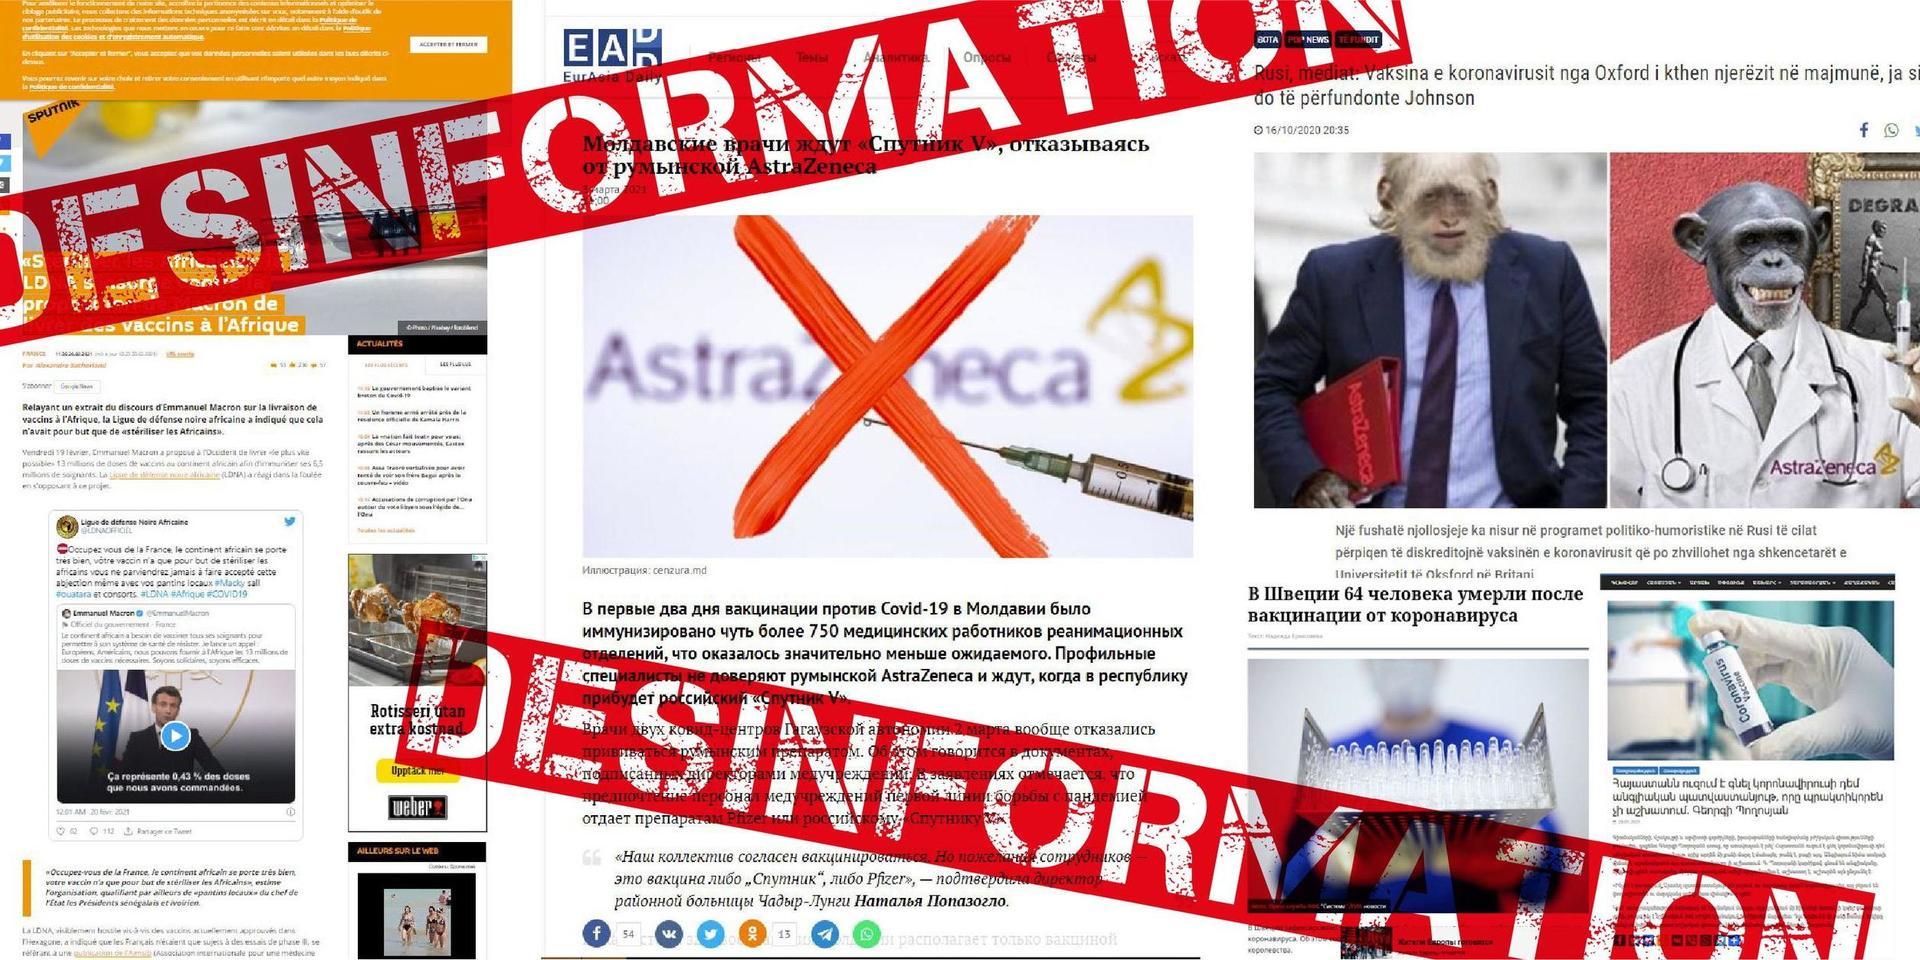 Pro-ryska medier beskylls för att angripa vacciner utvecklade i väst.